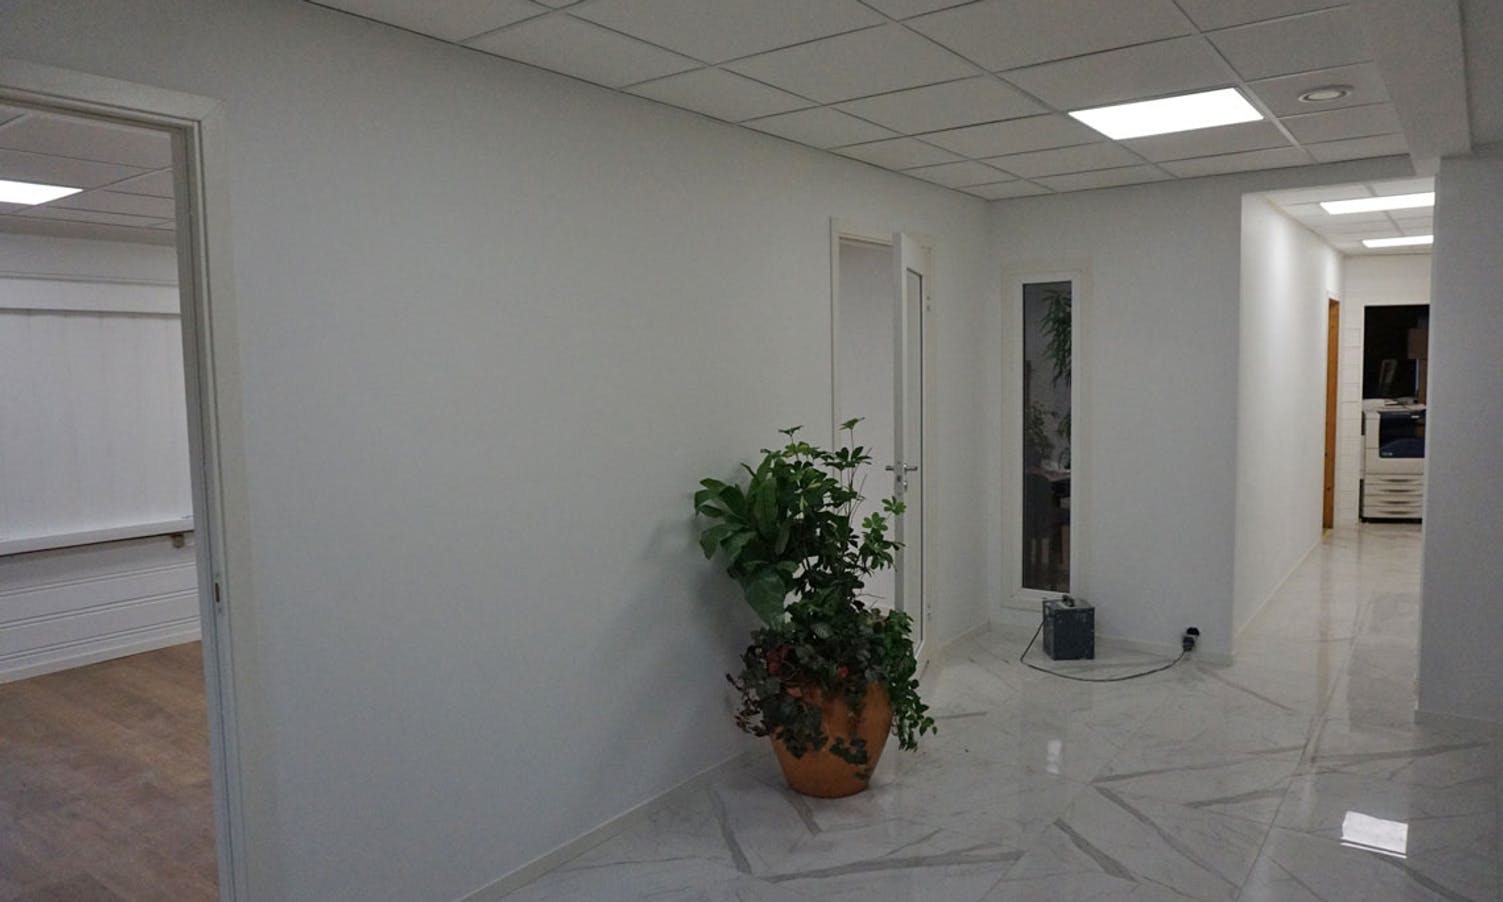 Himo får nye kontor - og ledige kontor for utleige. (Foto: KVB)